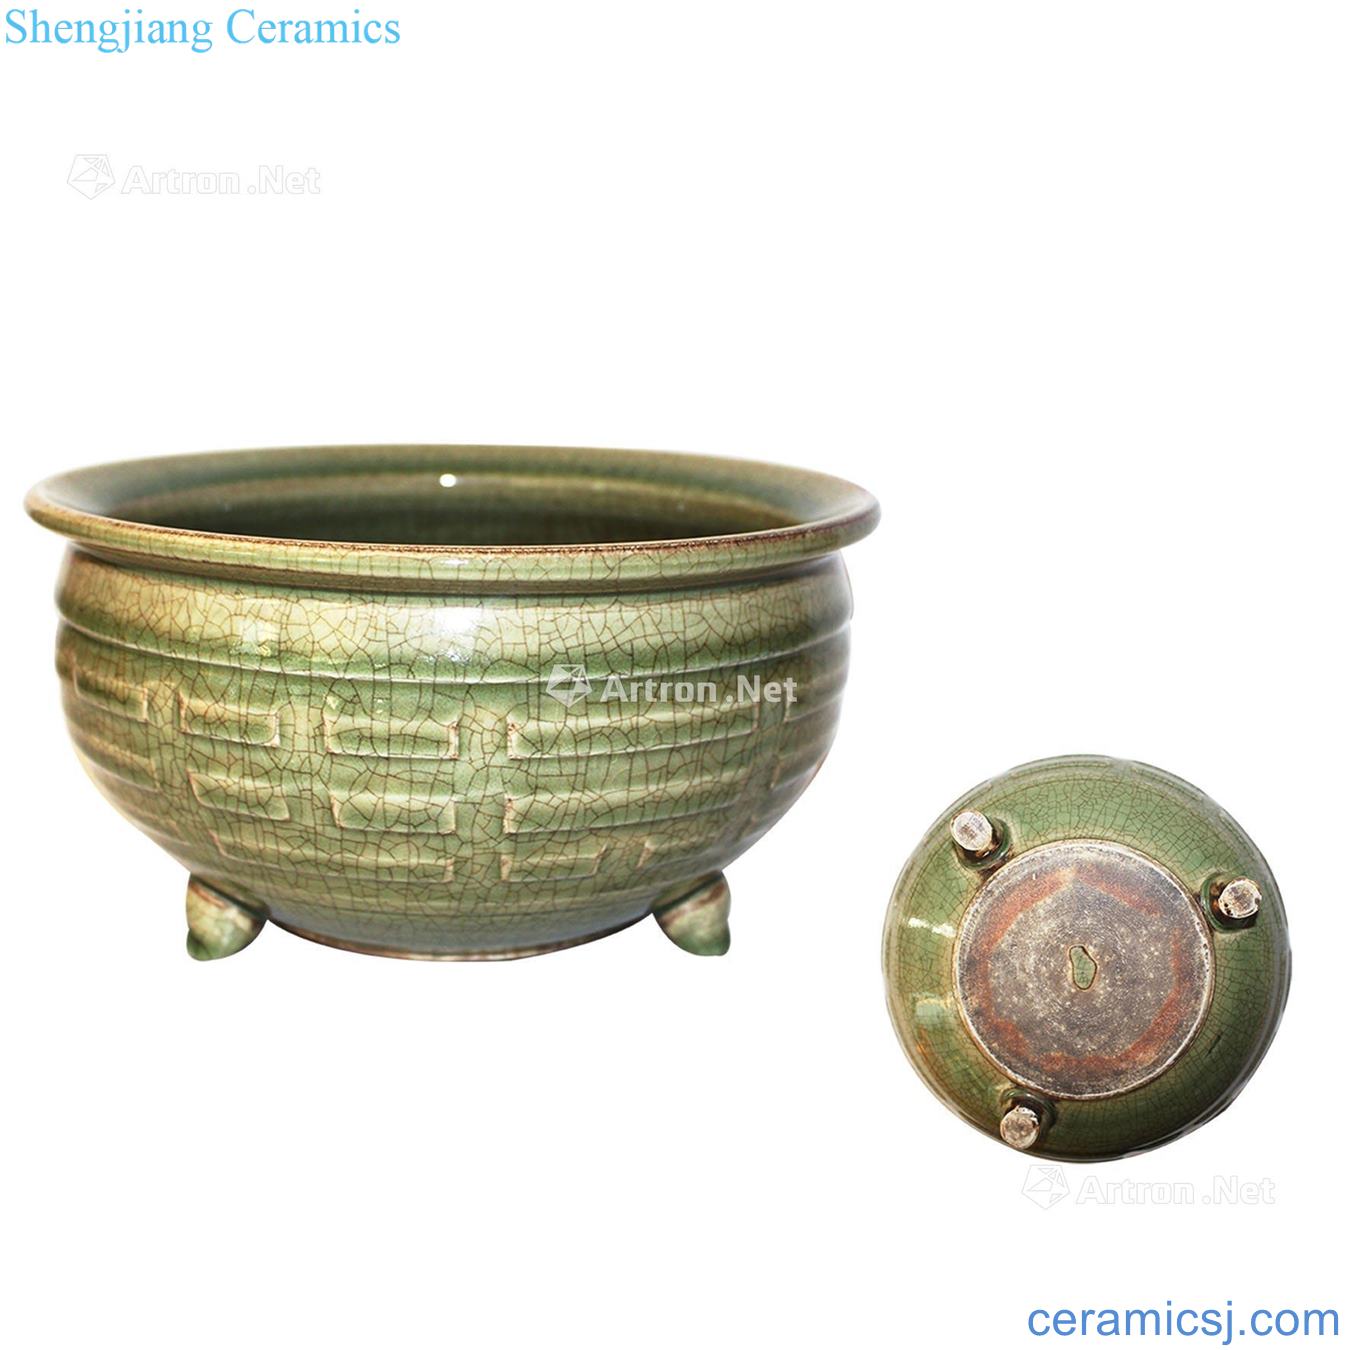 The yuan dynasty Longquan celadon gossip furnace